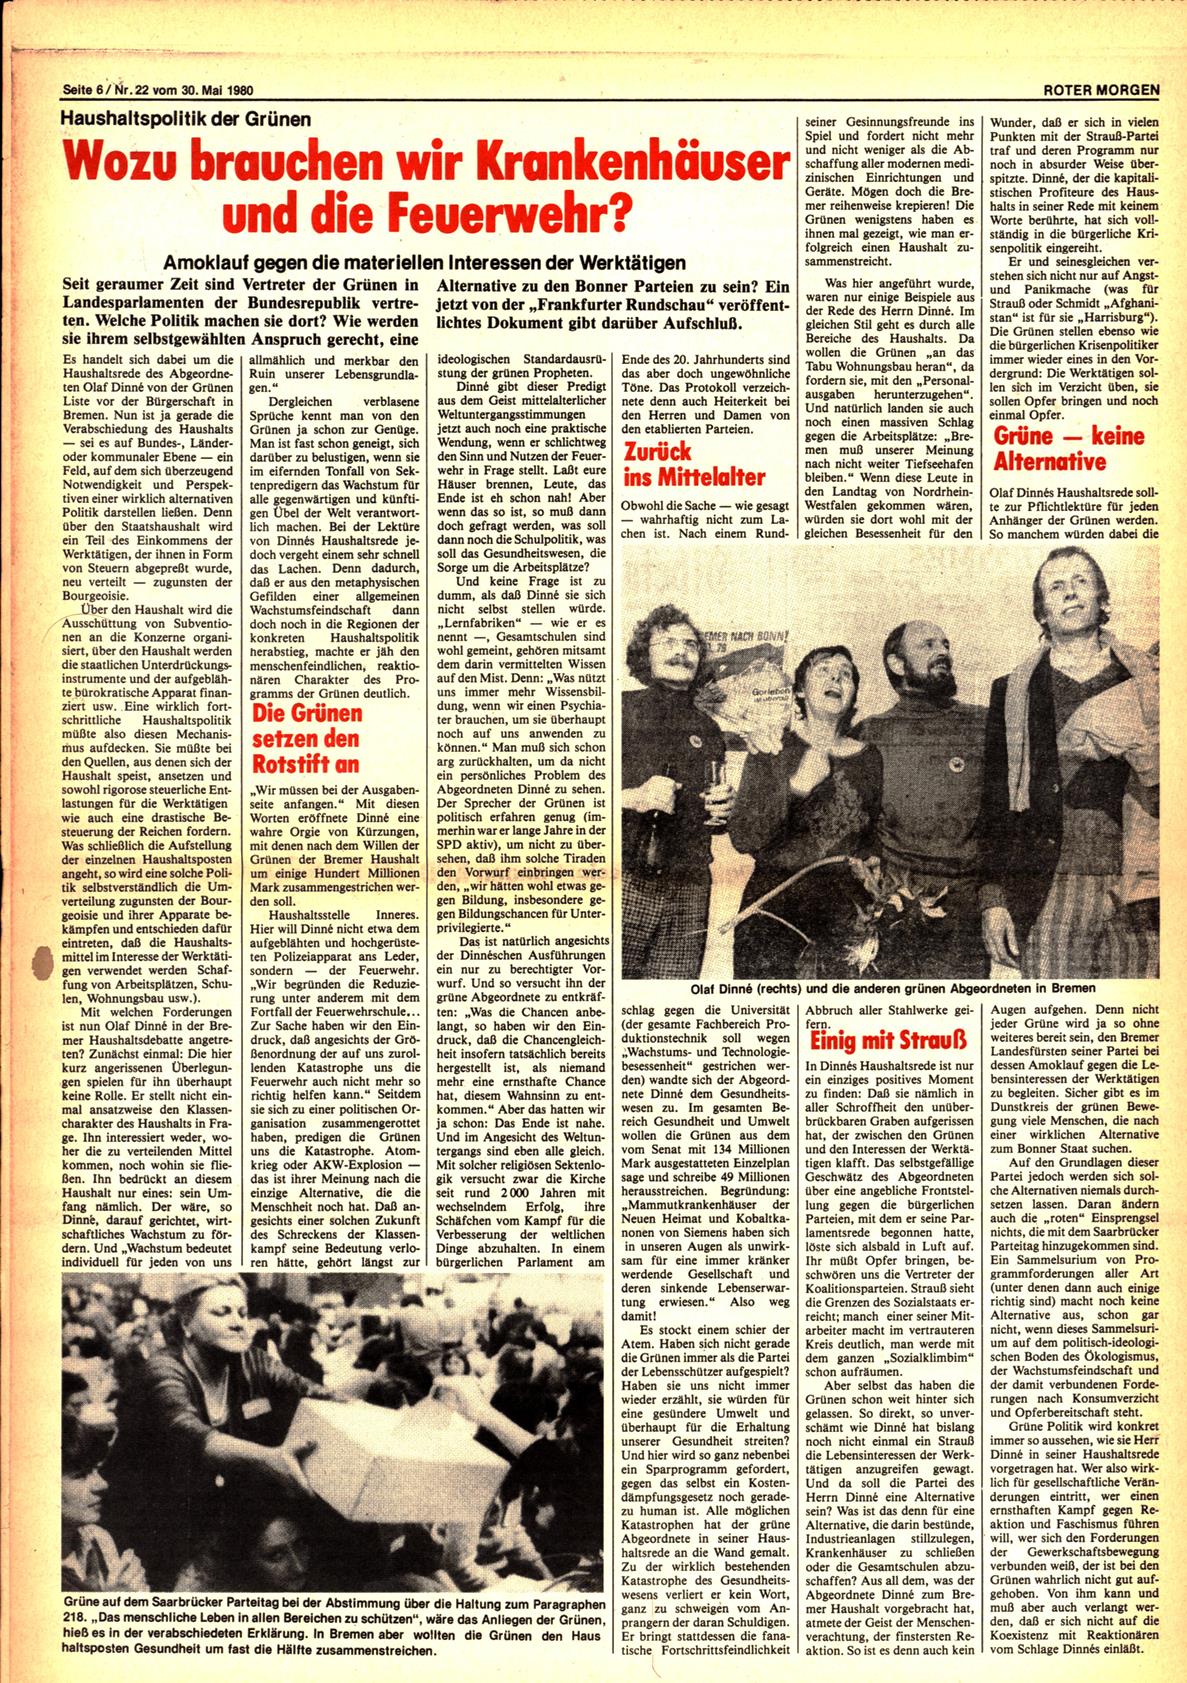 Roter Morgen, 14. Jg., 30. Mai 1980, Nr. 22, Seite 6